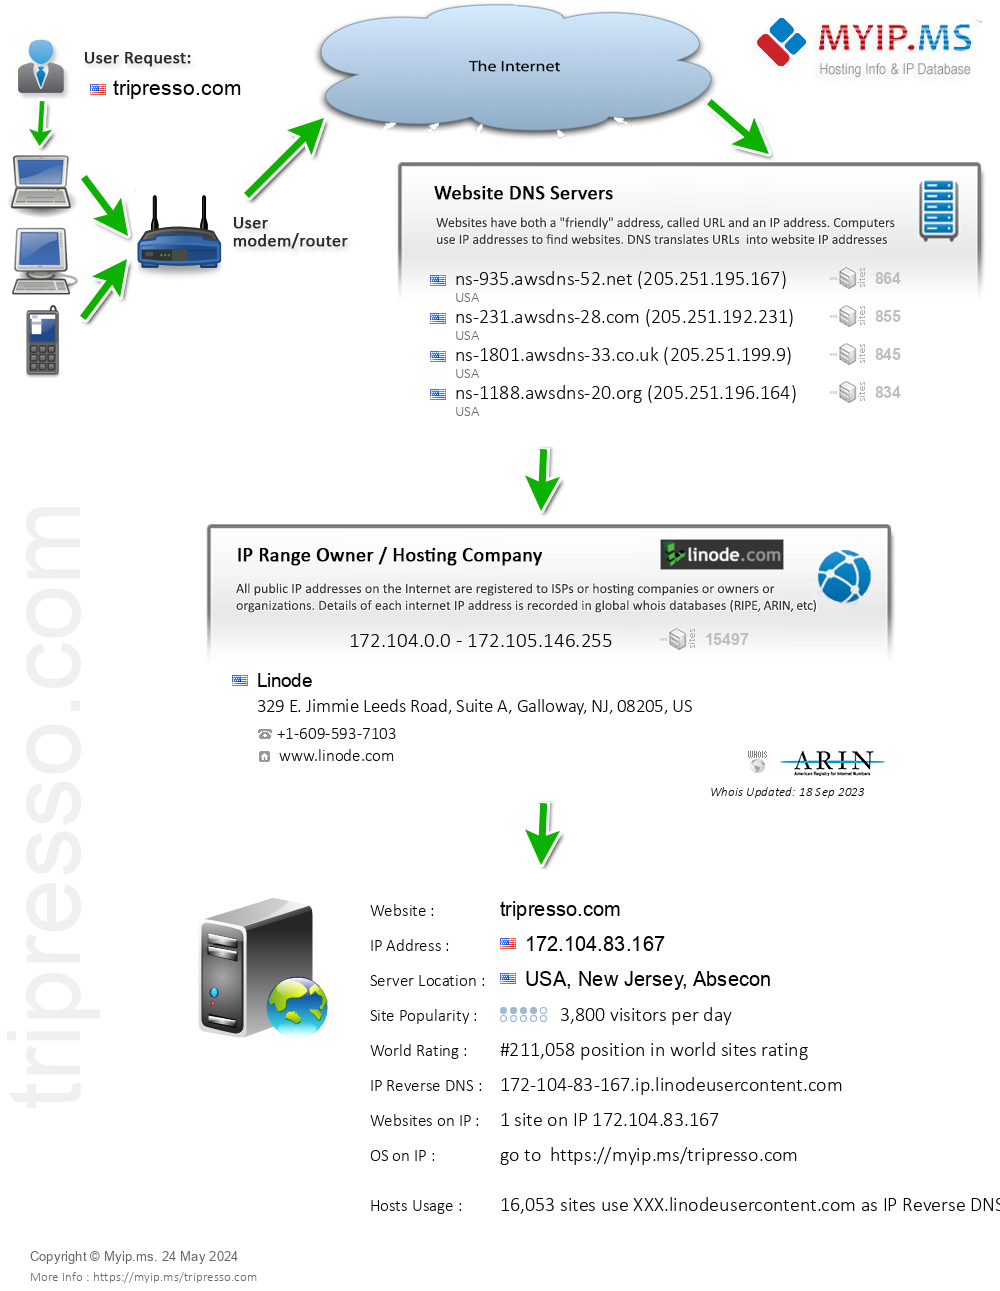 Tripresso.com - Website Hosting Visual IP Diagram